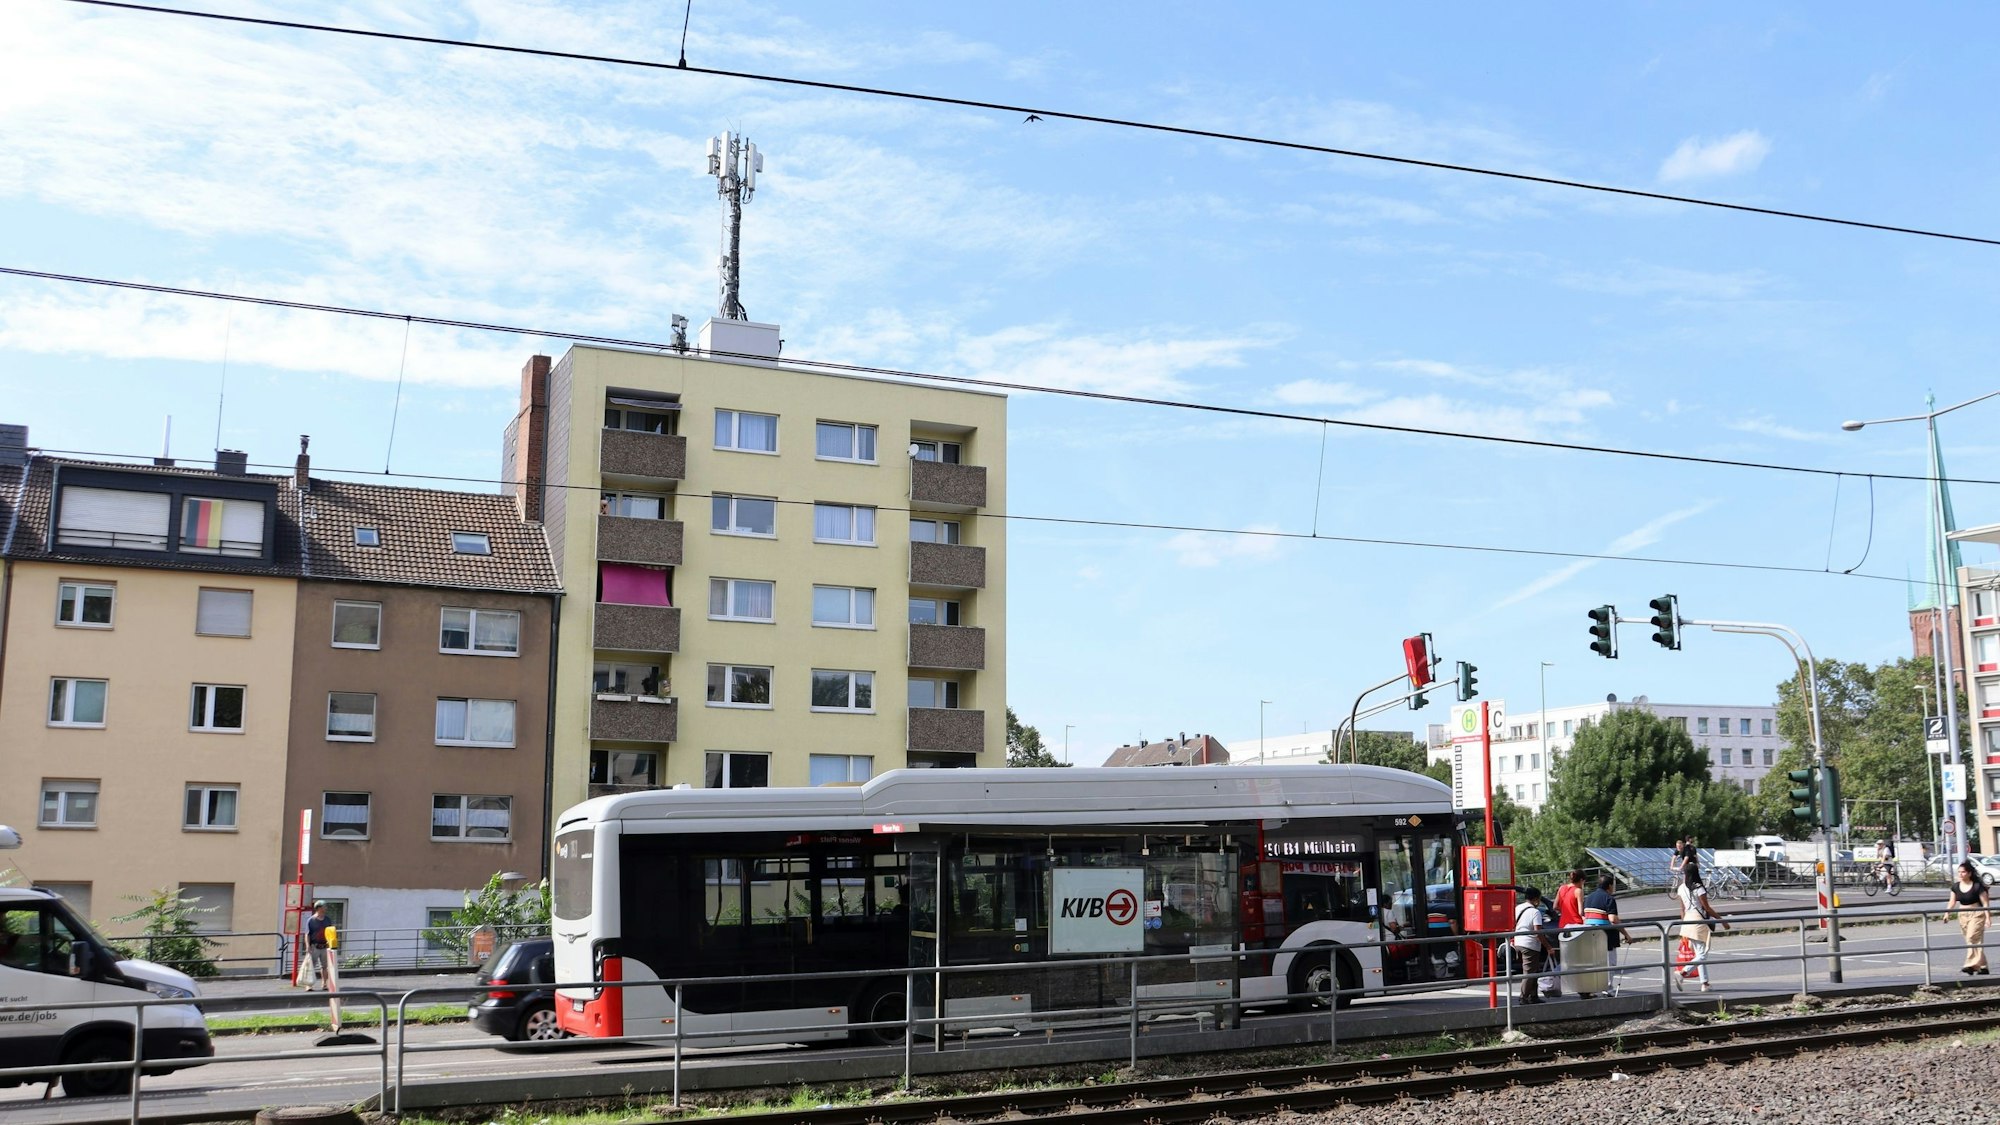 Eine Mobilfunk-Antenne auf einem mehrstöckigen Gebäude ist zu sehen, davor eine mehrspurige Straße mit einem Bus und Straßenbahnschienen.